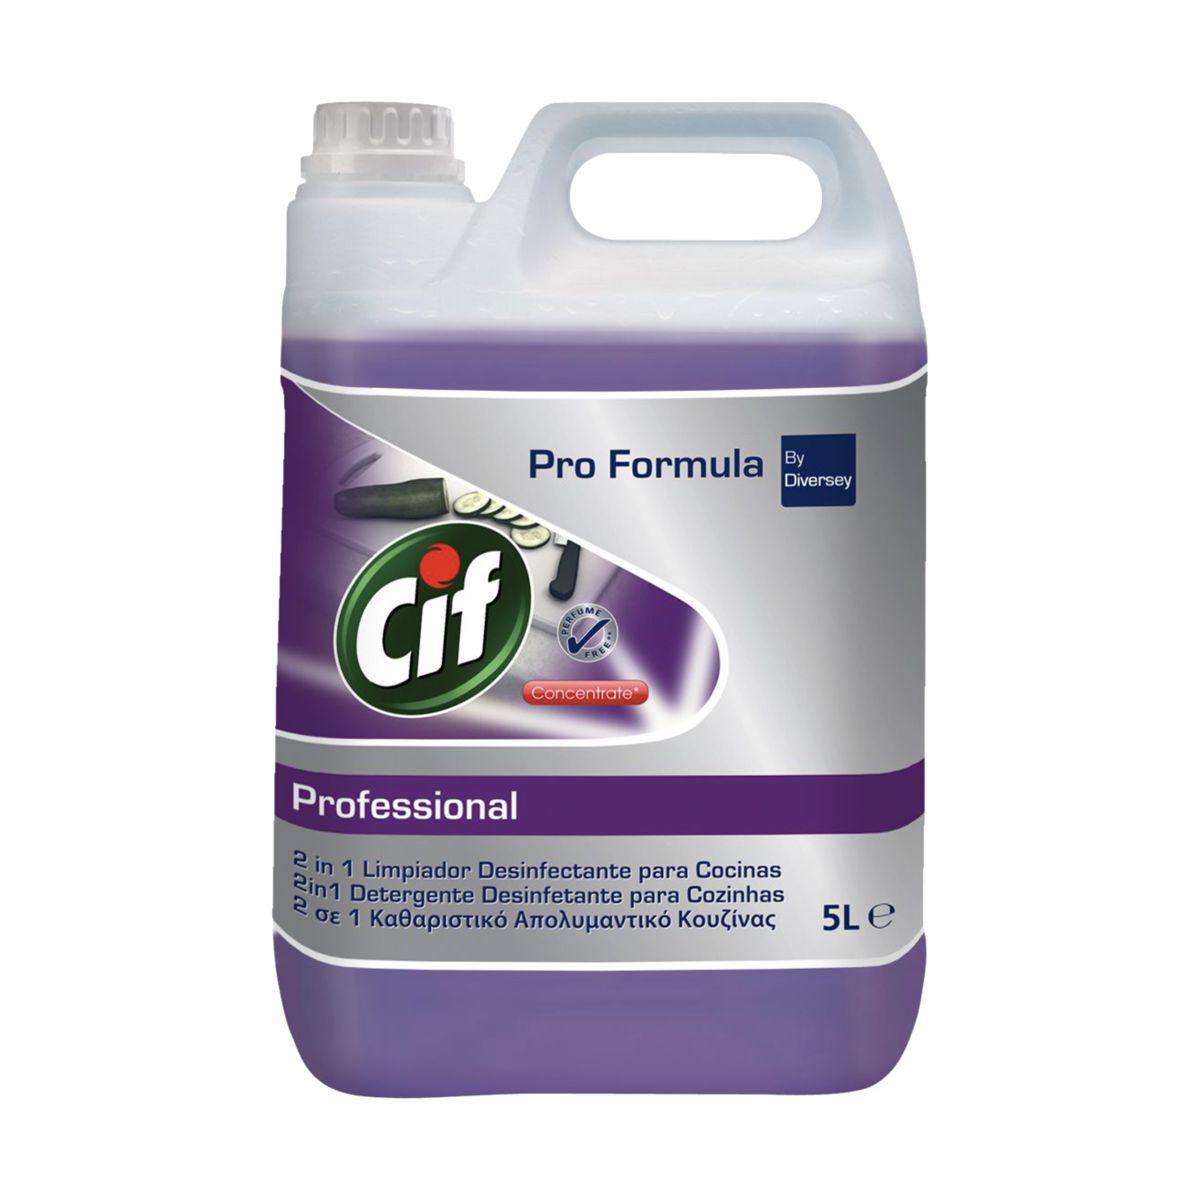 Detergente desinfectante para cozinhas 2 em 1 Cif Pro Formula by Diversey 5lt